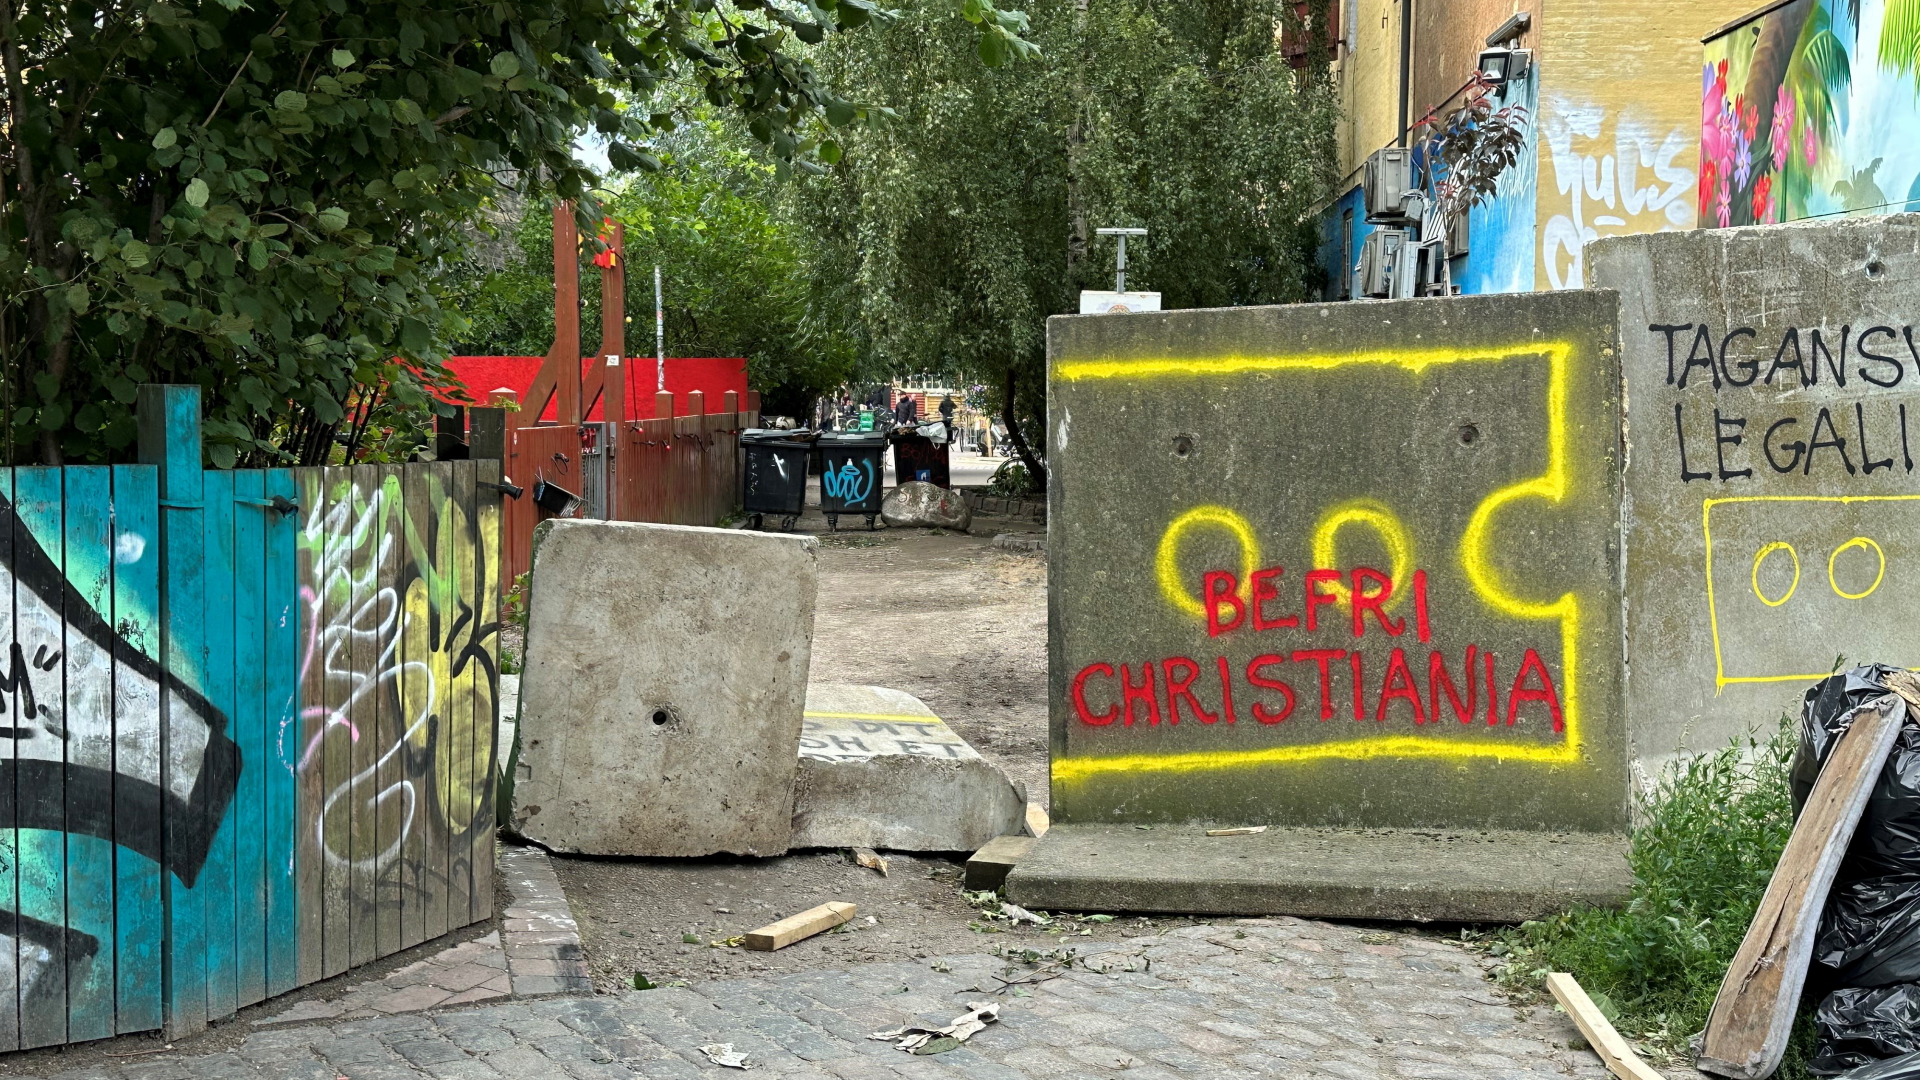 Auf einem grauen Betonblock, mit dem die "Pusher Street" teils blockiert wird, steht auf dänisch "Befreit Christiania".